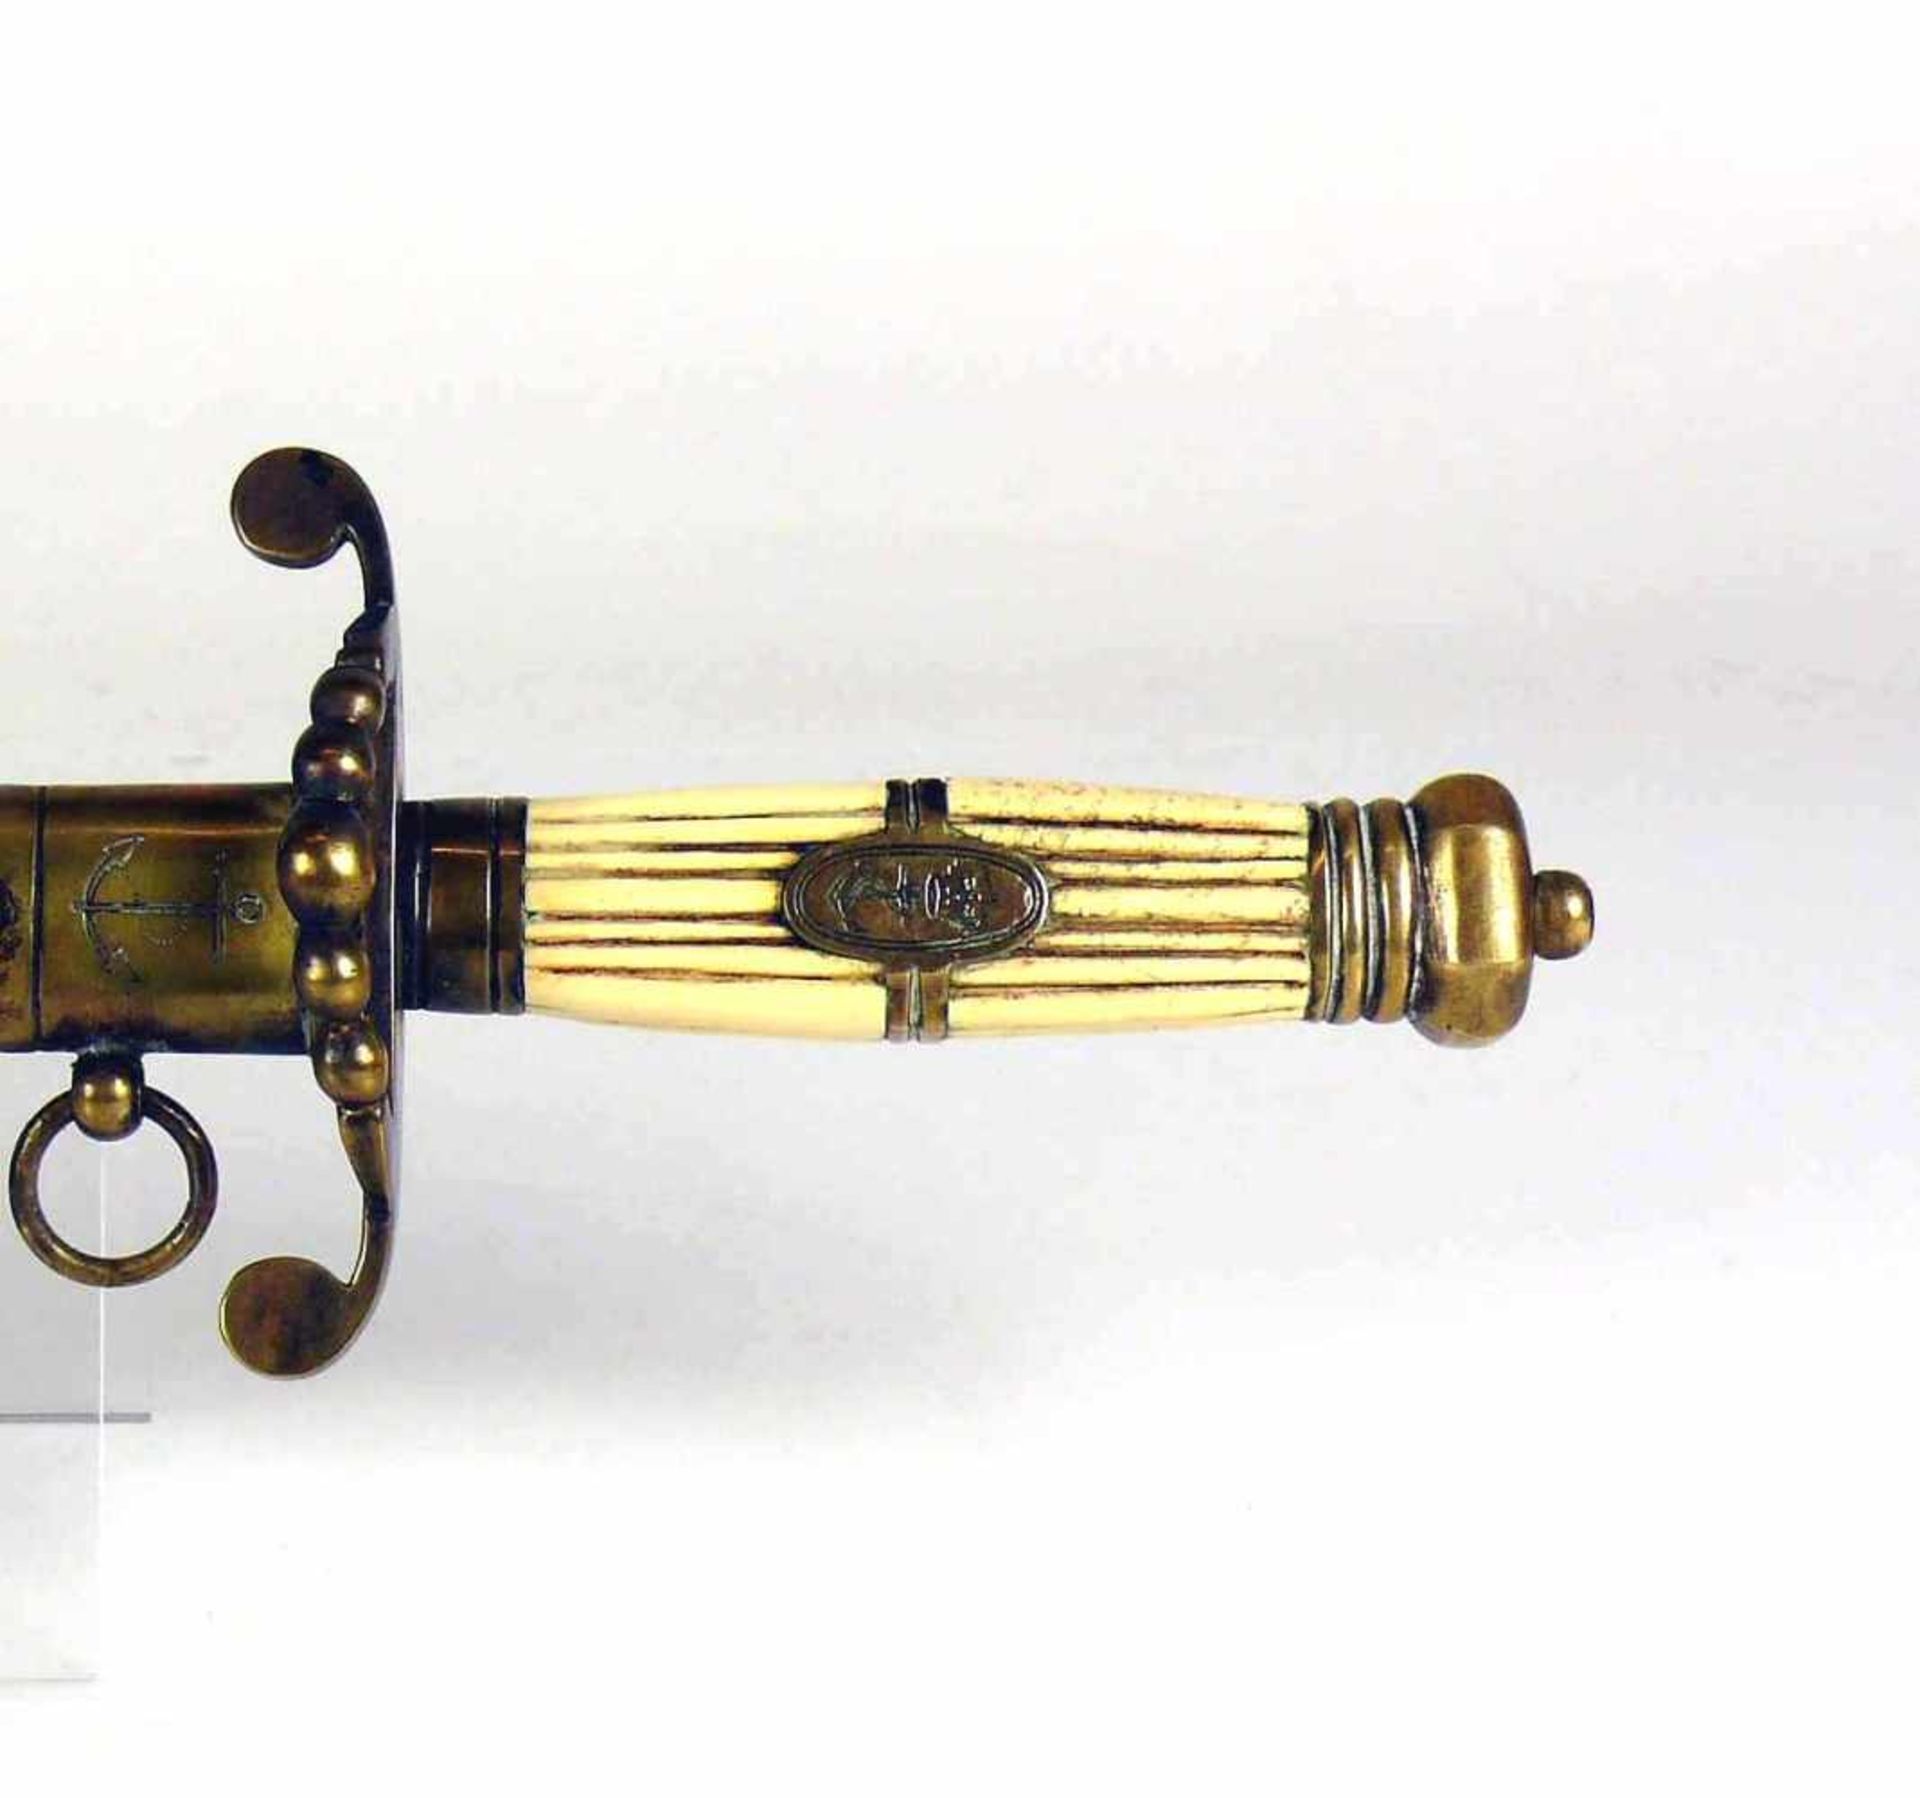 Marinedolch (um 1900)Lederscheide mit Messing-Applikationen; Griff in Messing bzw. beinfarbigem - Image 2 of 3